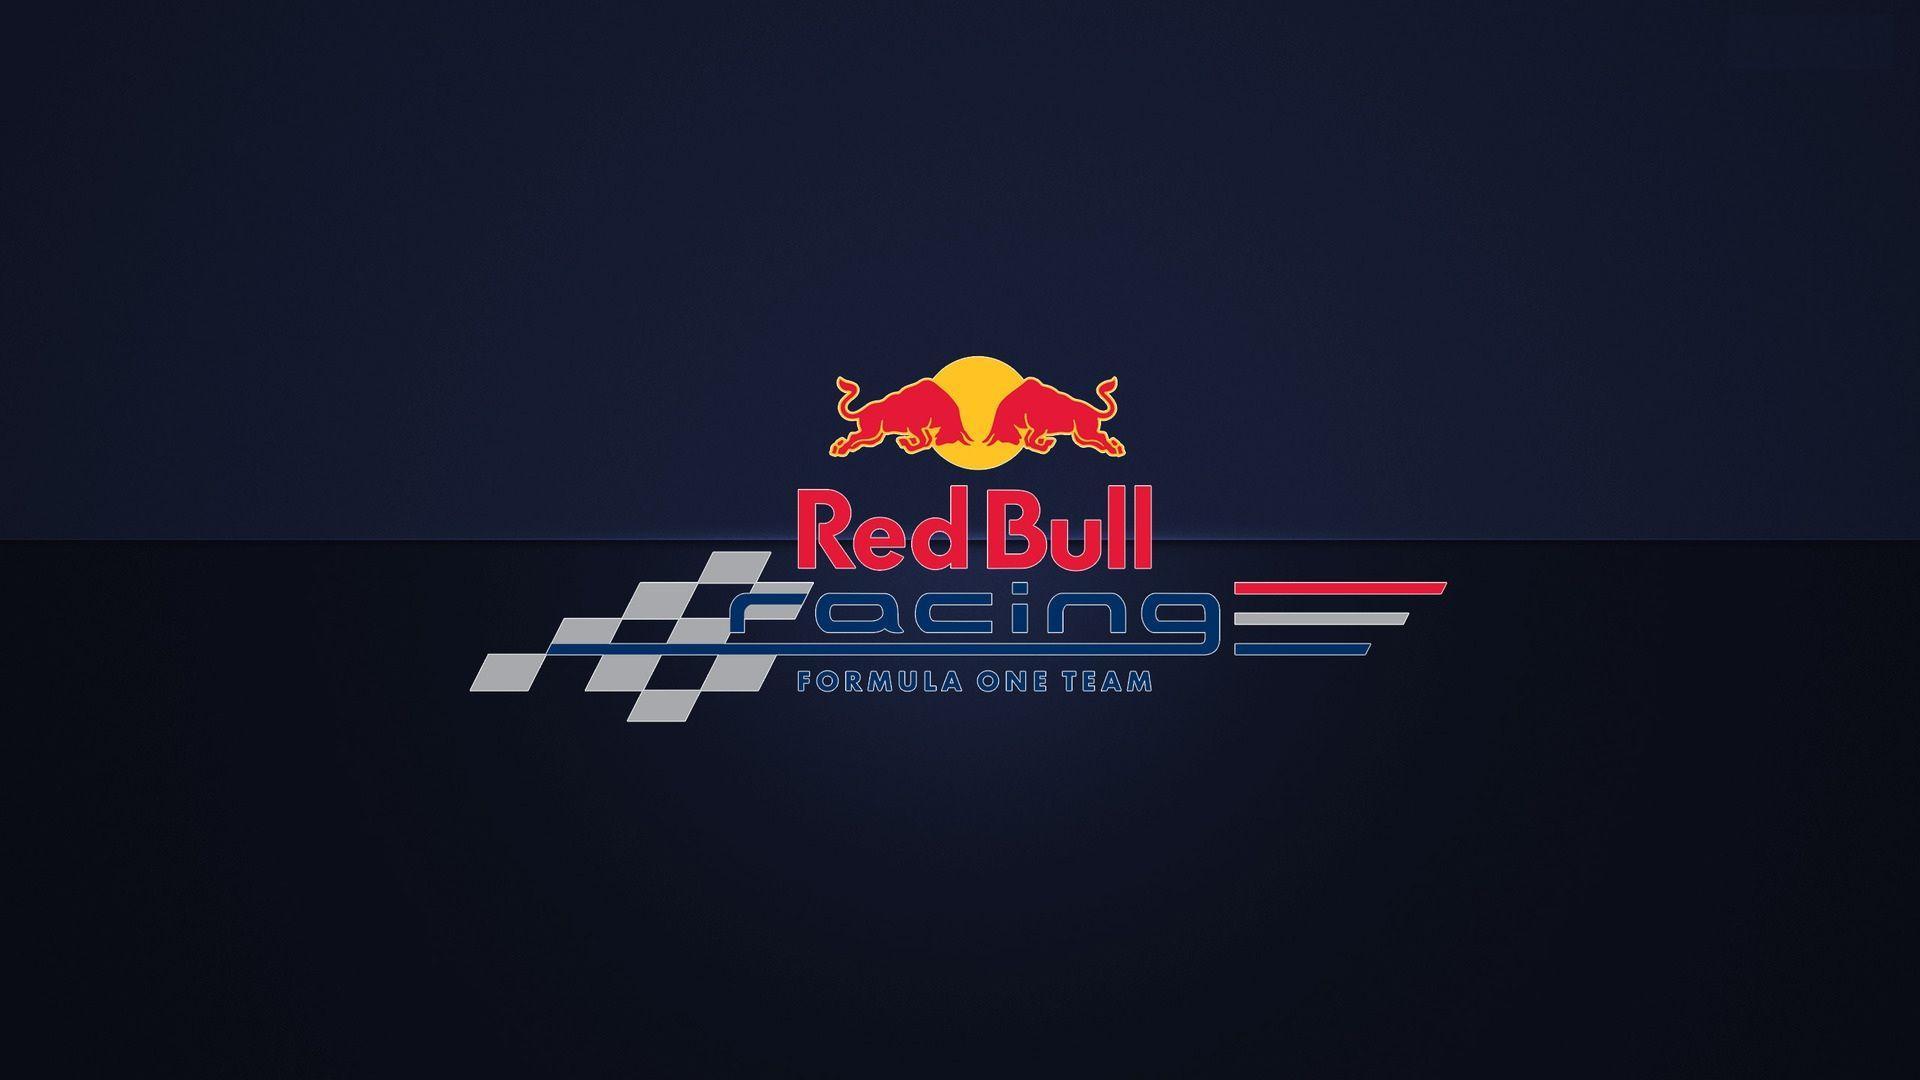 Red Bull Racing Formula One Logo Wallpaper. HD Wallpaper